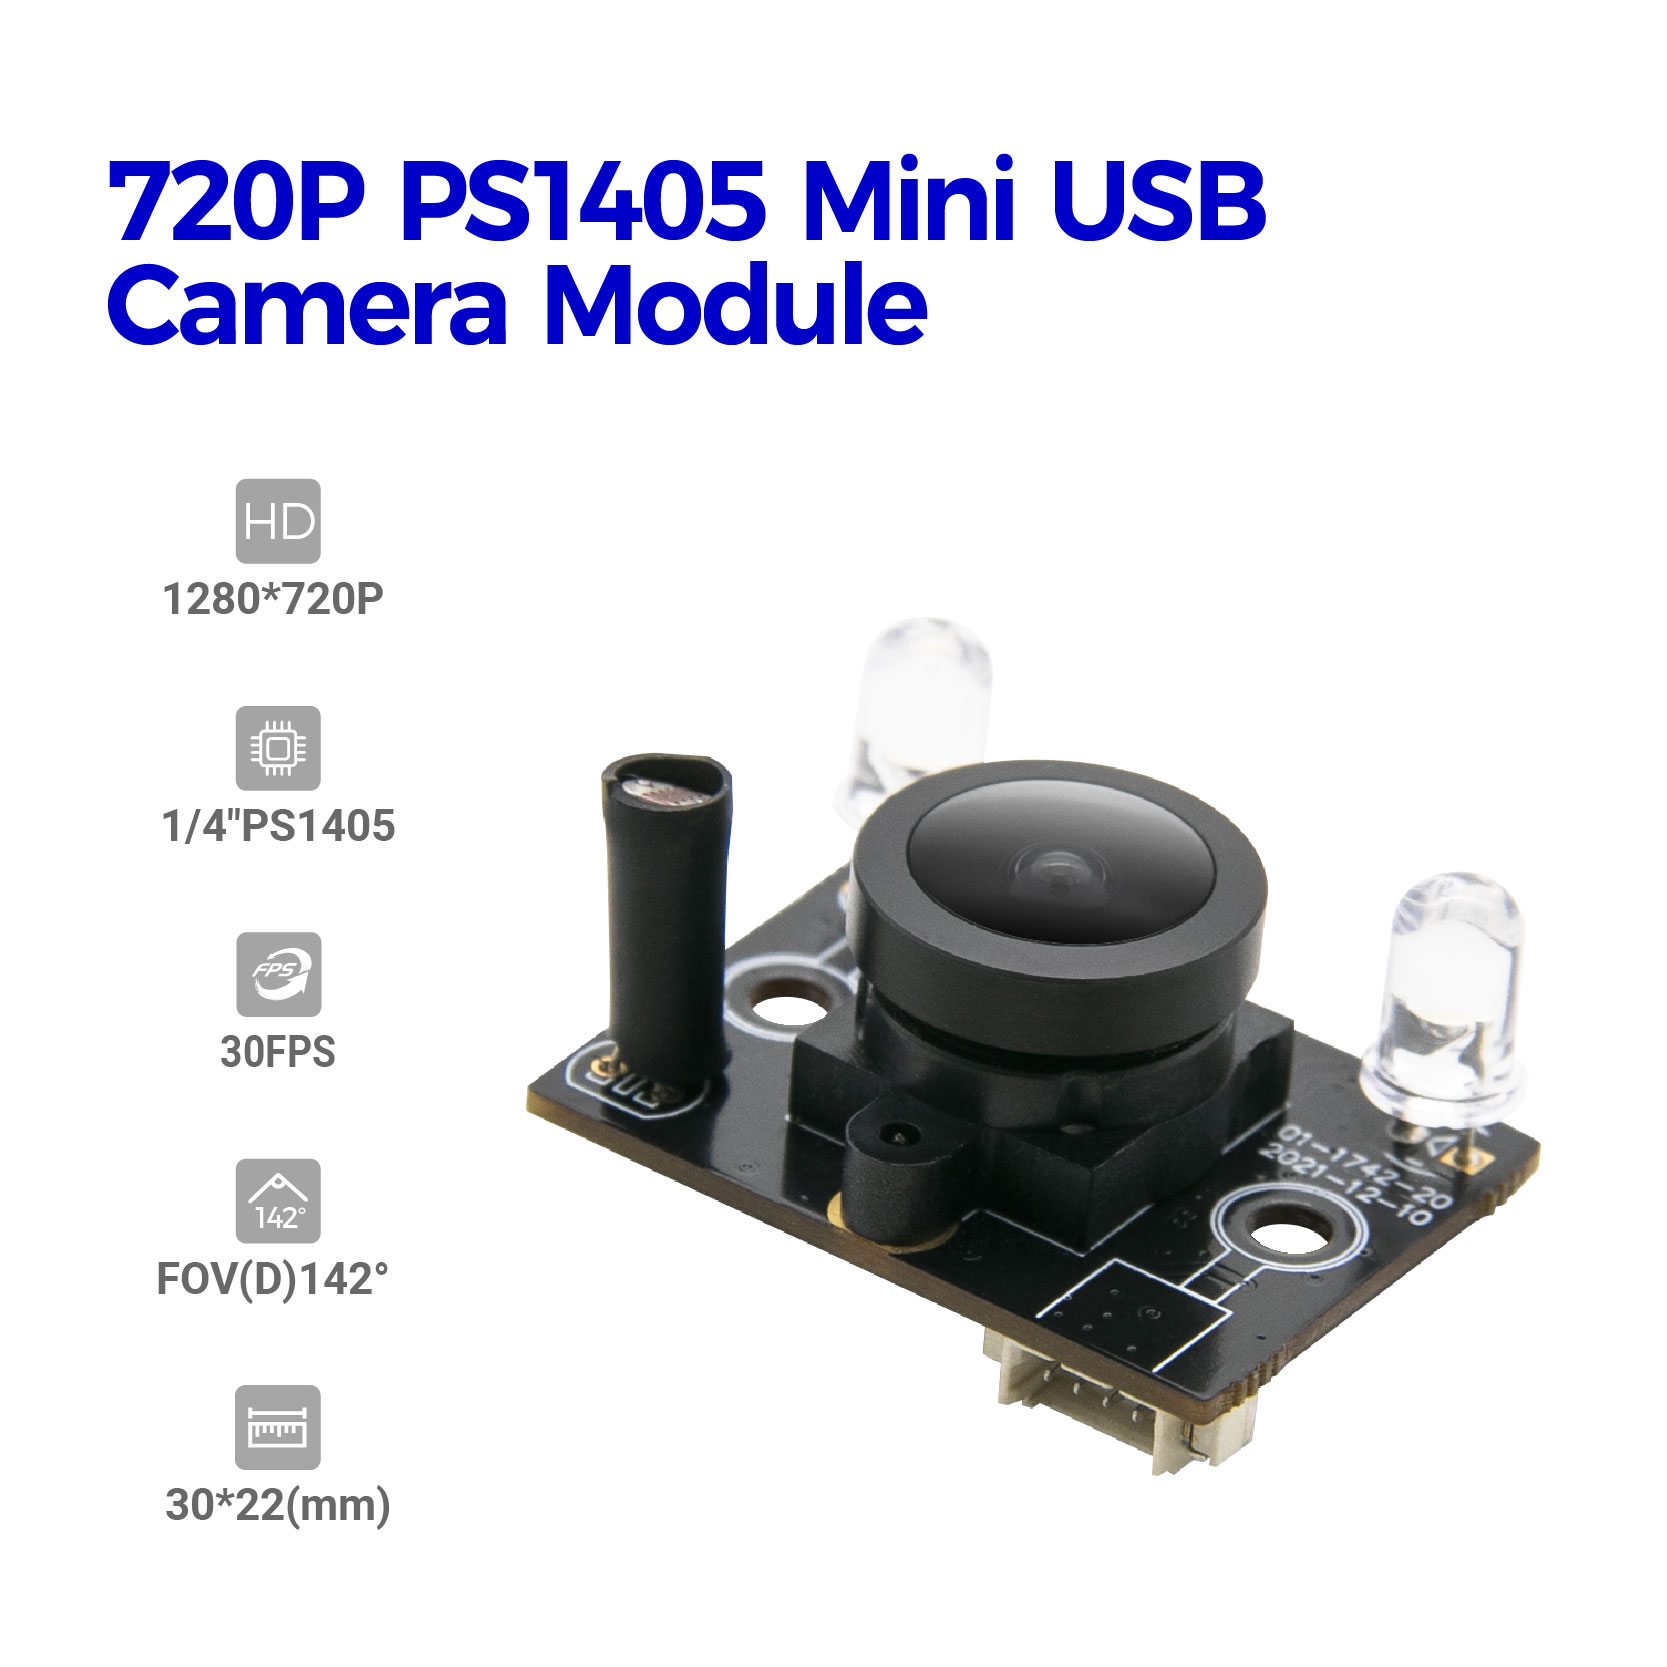 720P SP1405 लागत प्रभावी कैमरा मॉड्यूल